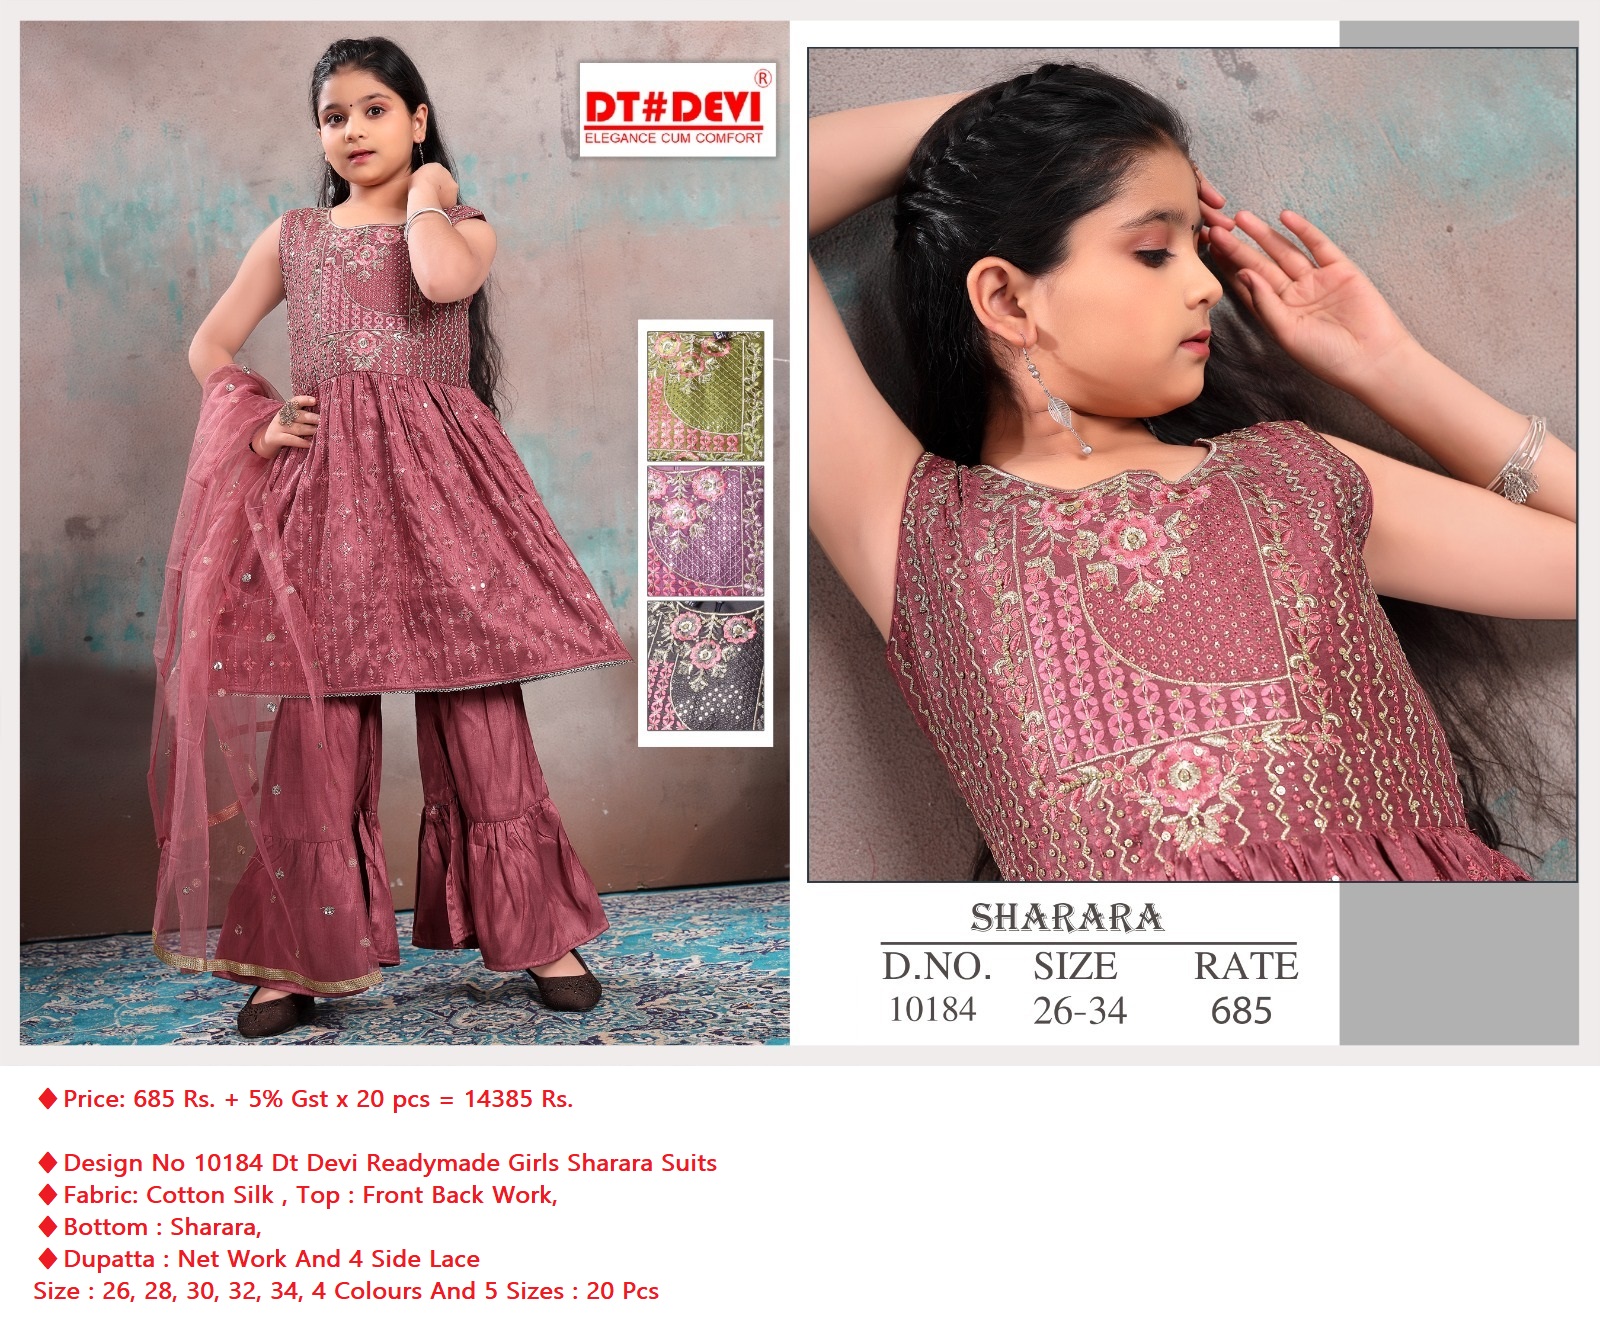 Dt Devi Design No 10184 Readymade Girls Sharara Dress Catalog Lowest Price